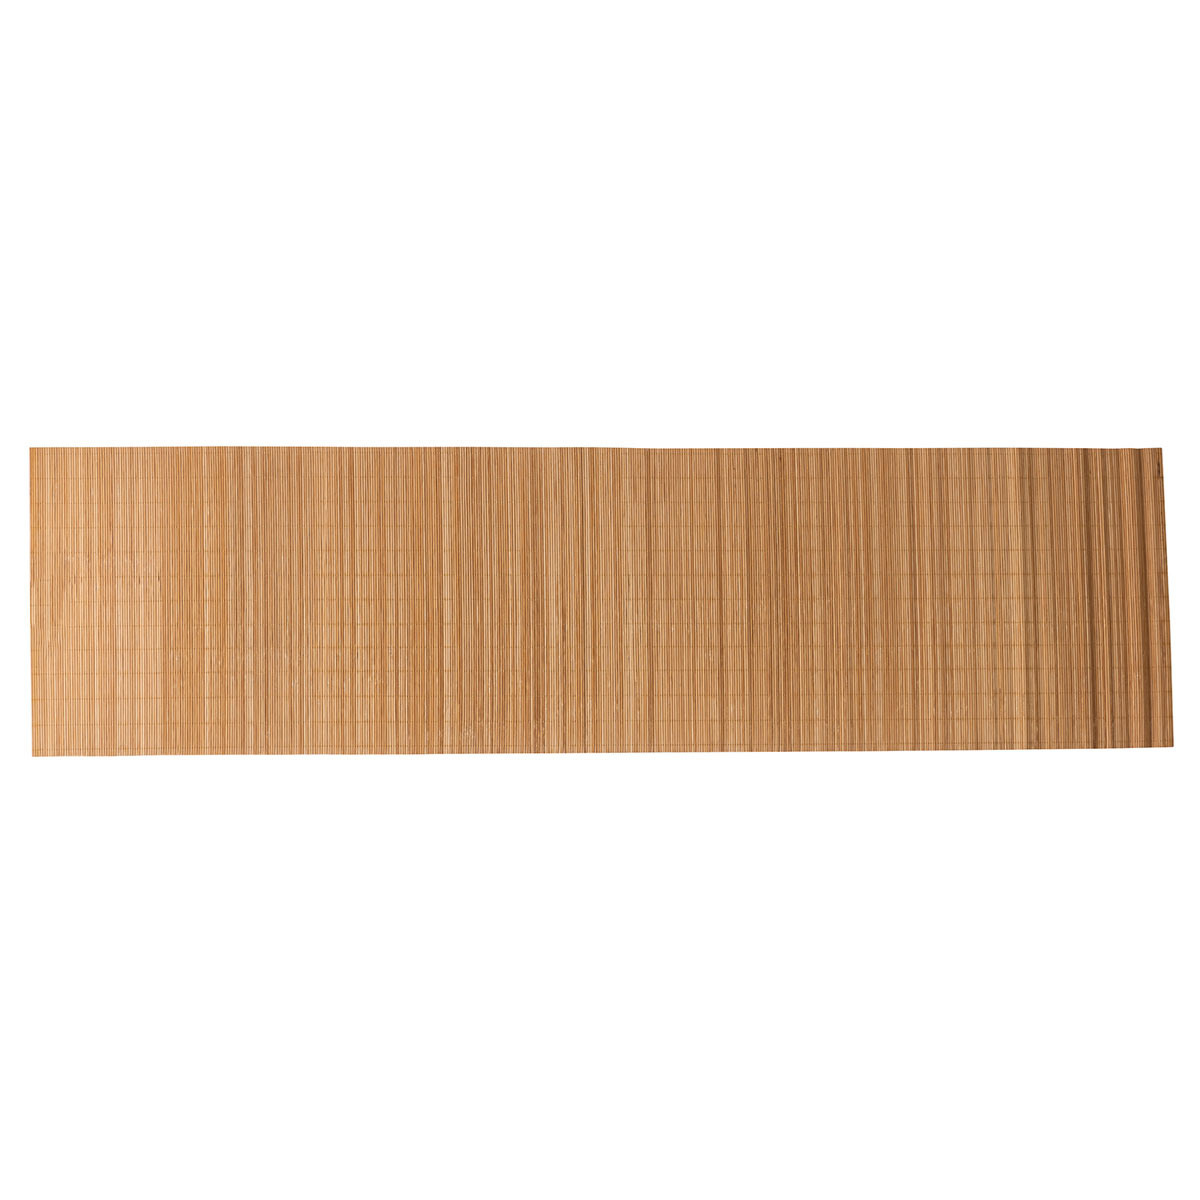 Τραβέρσα (37×140) S-D Bamboo 194925 275545